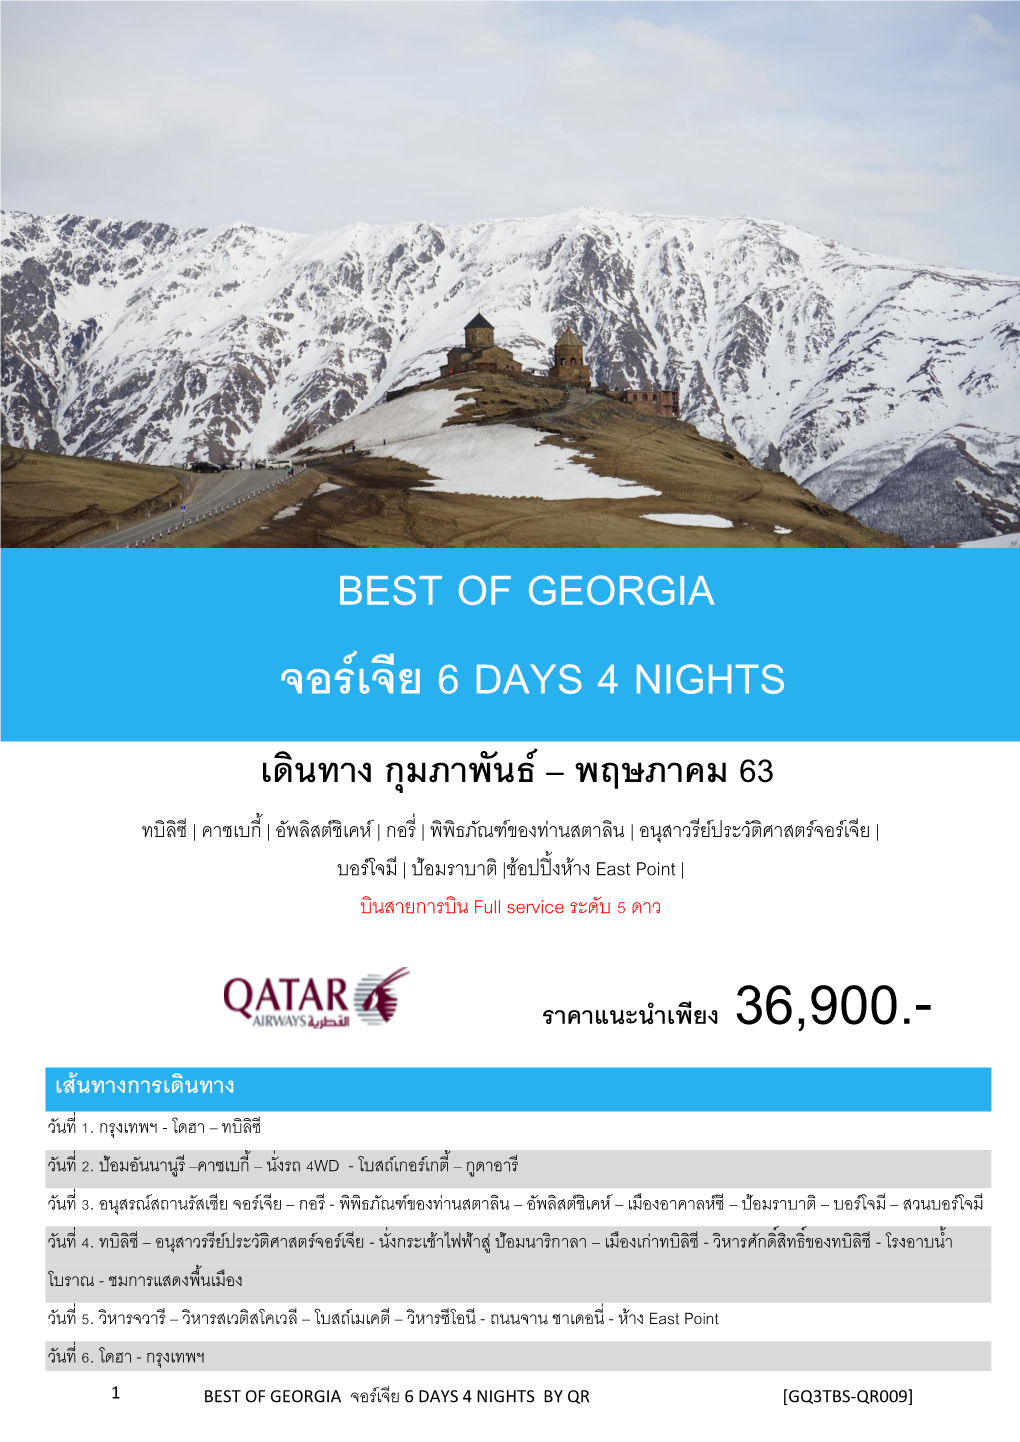 Best of Georgia จอร์เจีย 6 Days 4 Nights เดินทาง กุมภาพันธ์ – พฤษภาคม 63